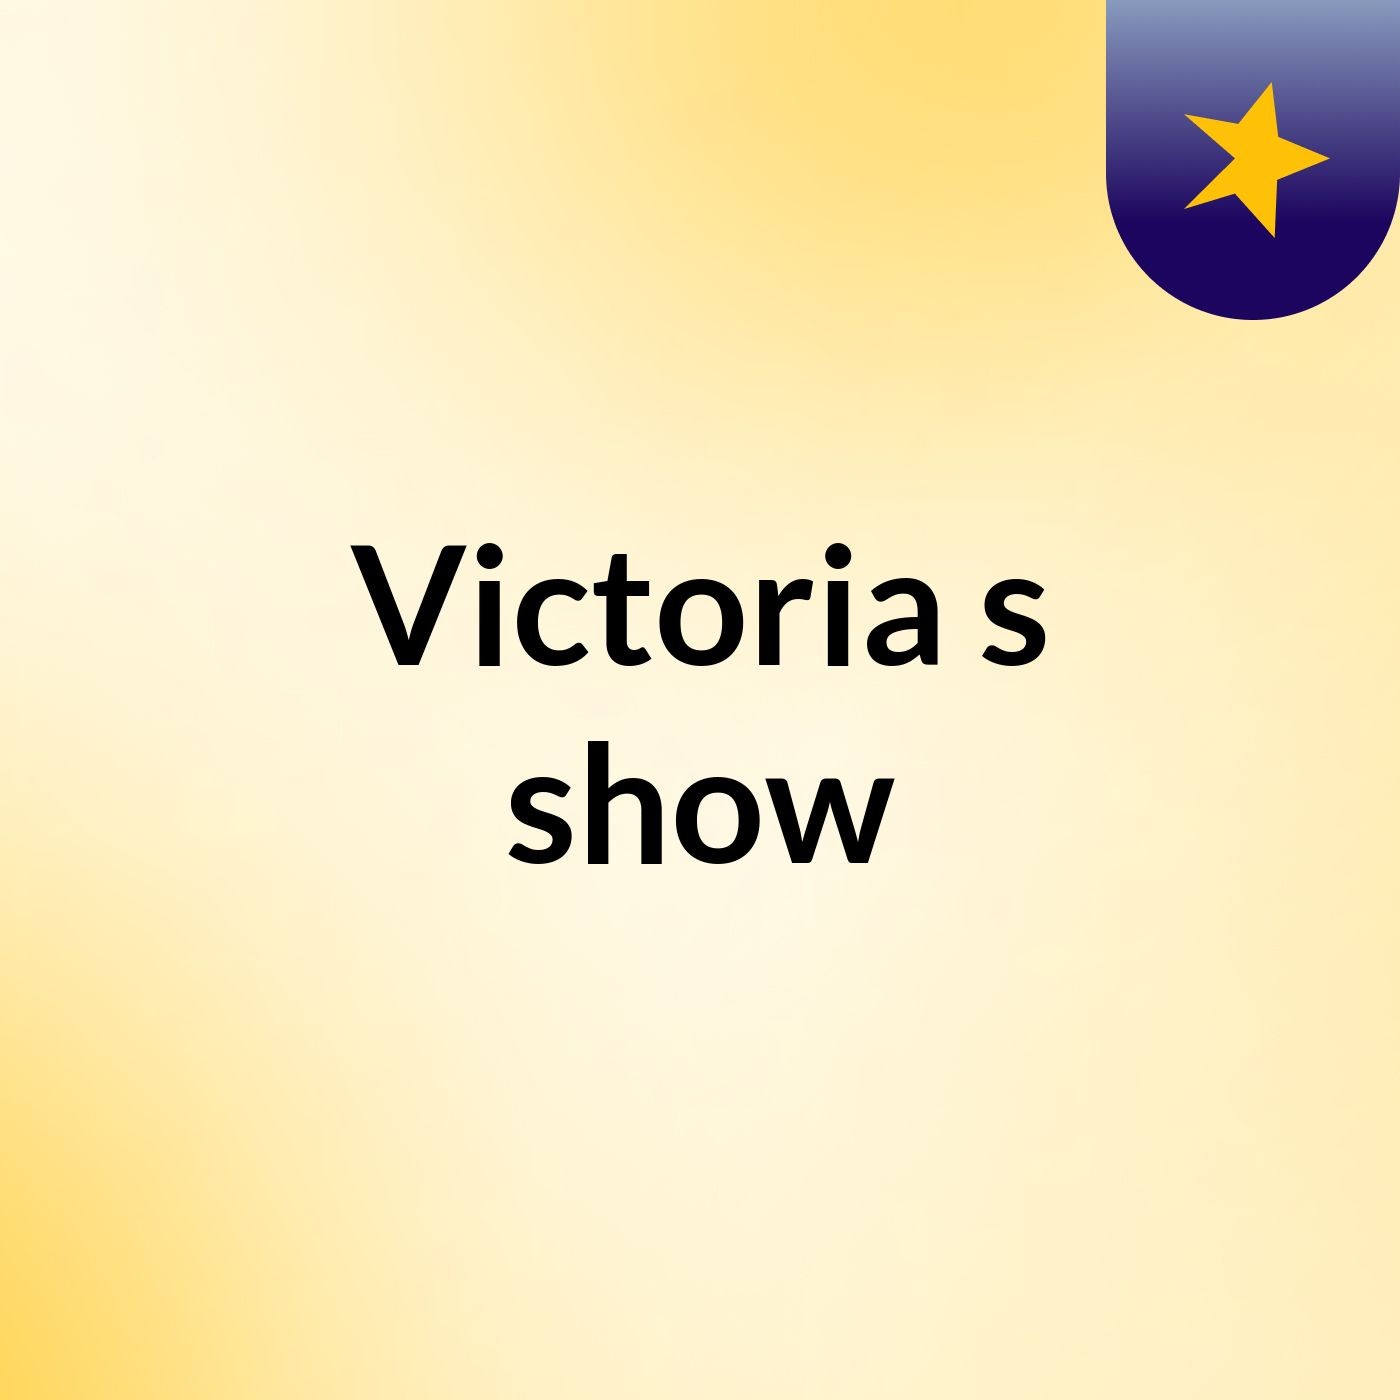 Victoria's show